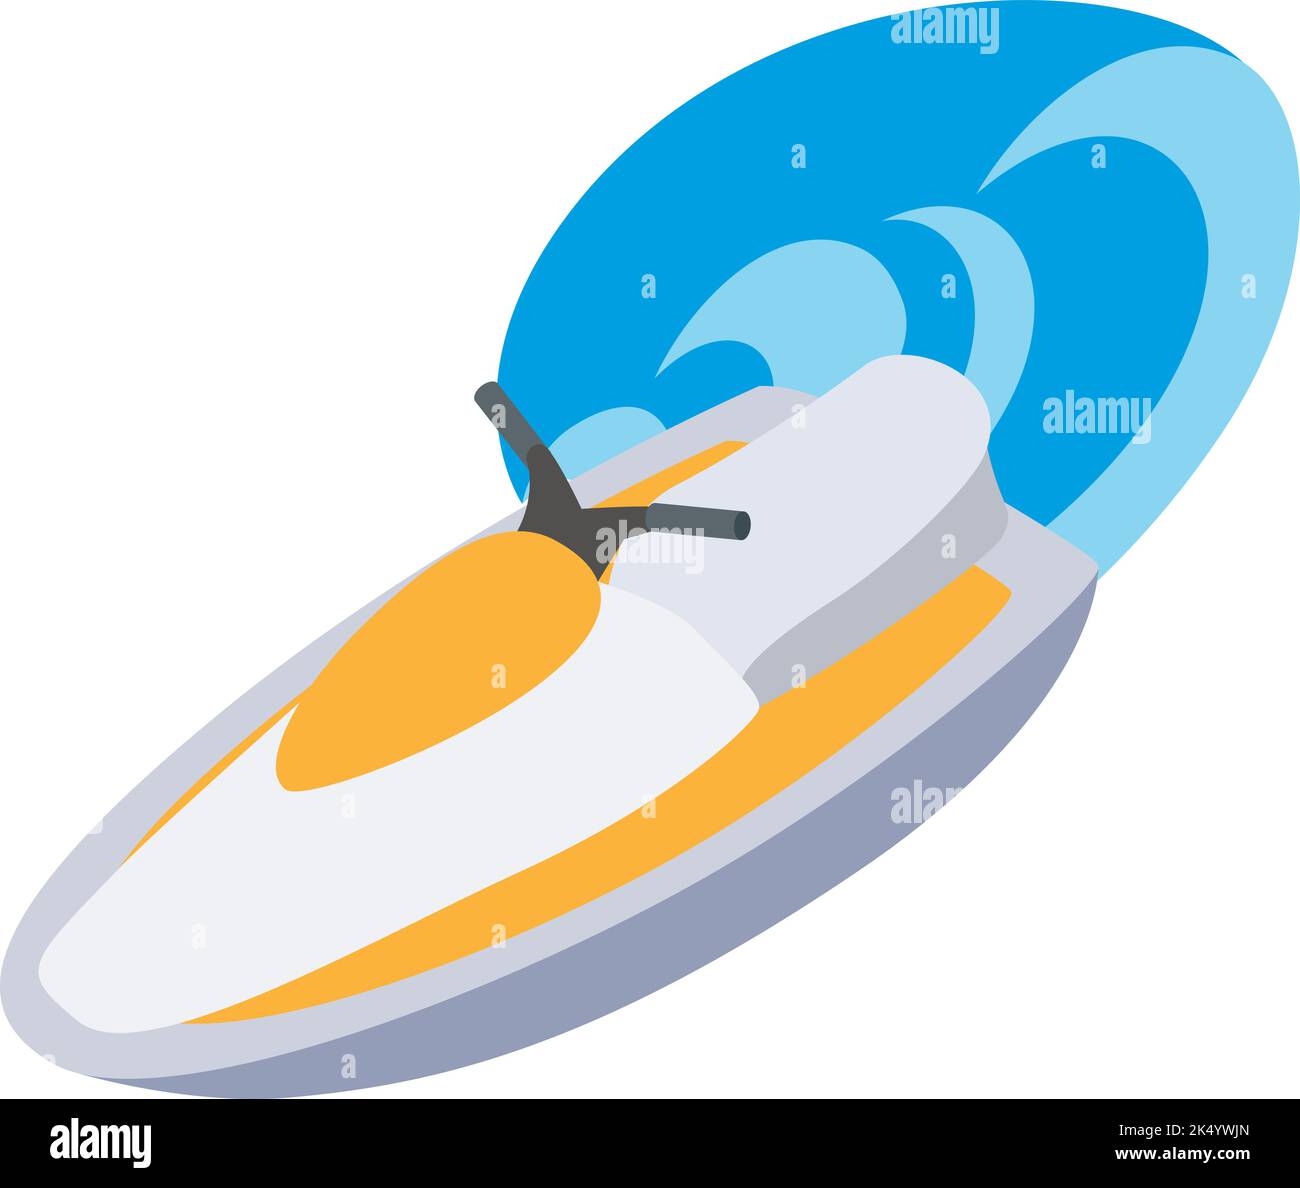 Vettore isometrico Jet ski Icon. Nuovo moderno jetski bianco giallo e grande onda di mare. Moto d'acqua, moto d'acqua, moto d'acqua, concetto attivo di ricreazione Illustrazione Vettoriale